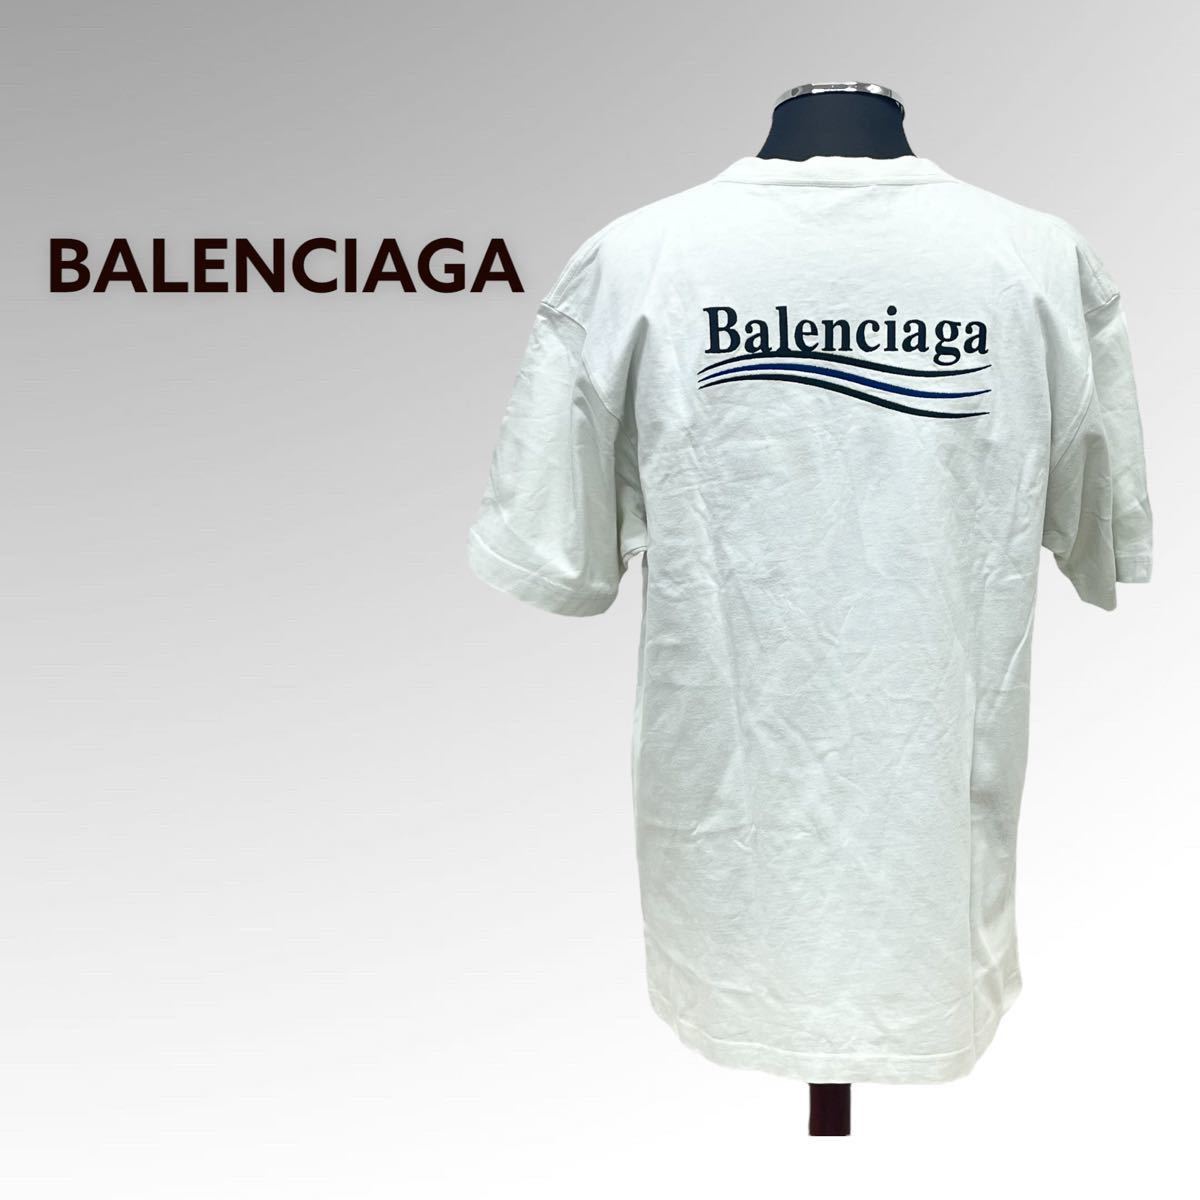 バレンシアガ キャンペーンロゴ刺繍 ラージフィット 半袖 Tシャツ-